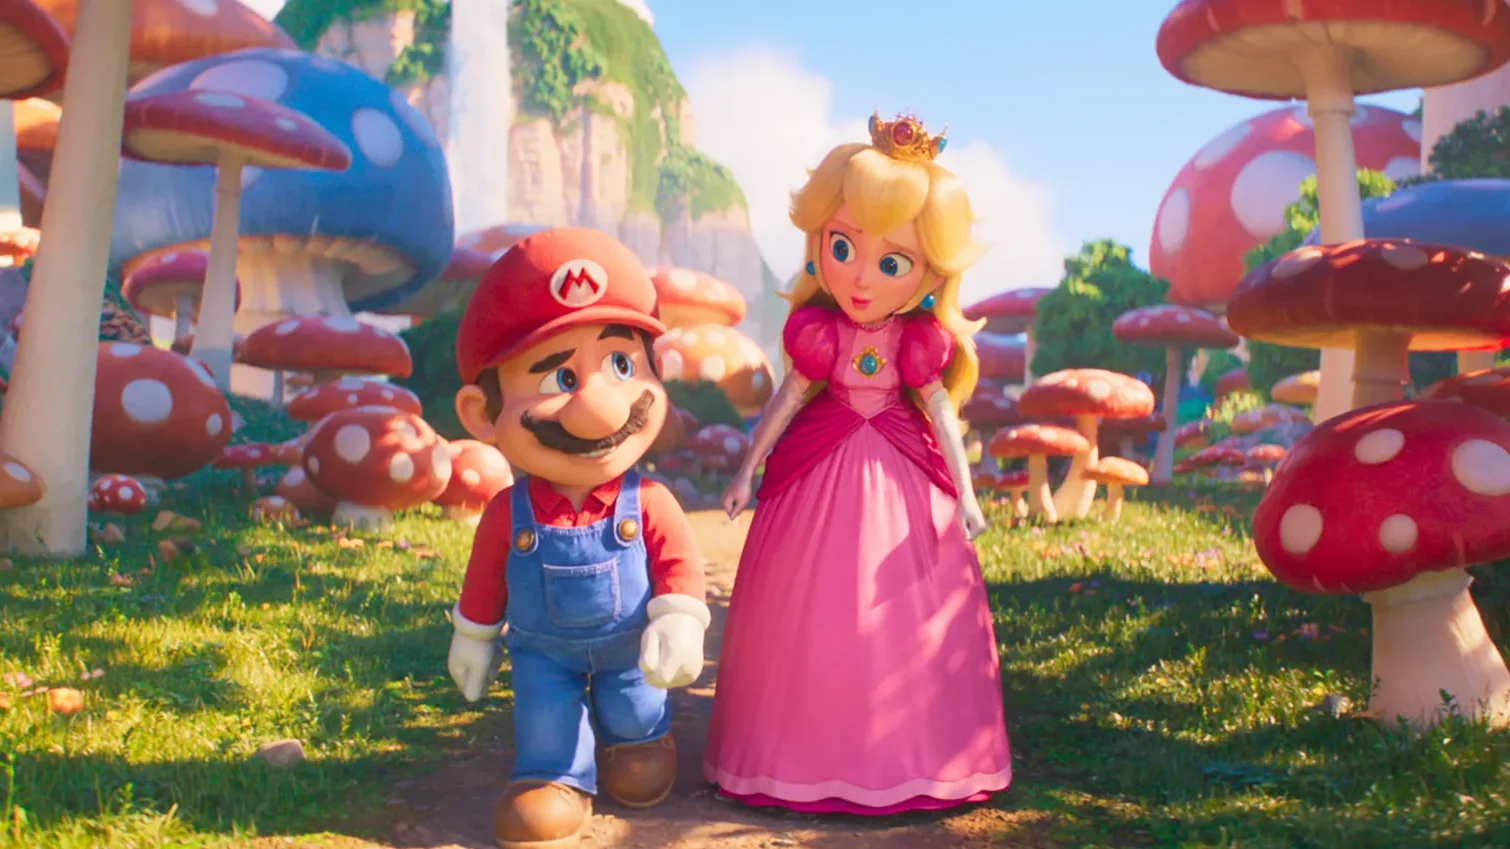 Review Phim Anh Em Super Mario: Làm mới kỷ niệm cùng Mario và Luigi